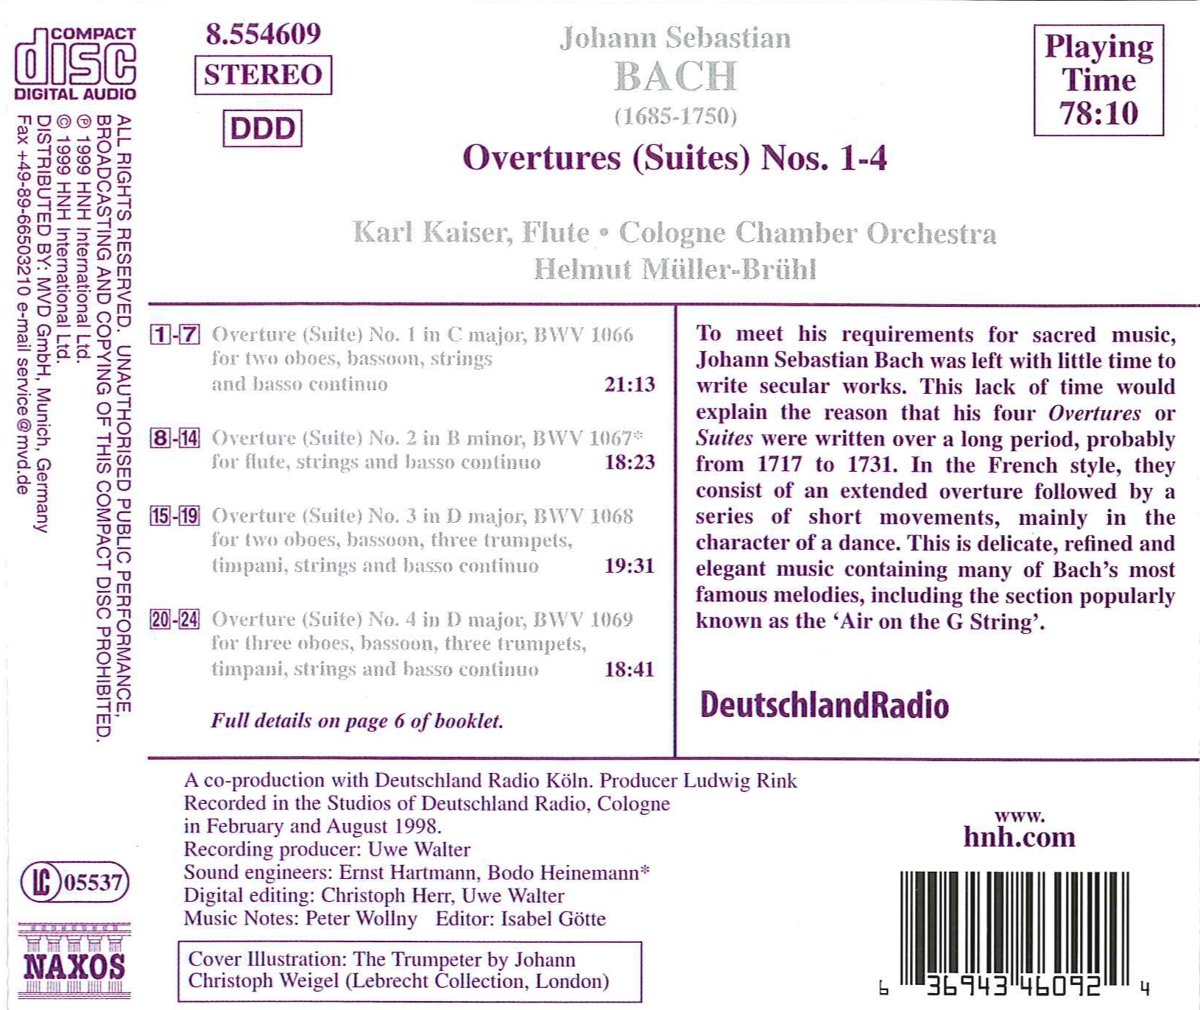 Helmut Muller-Bruhl 바흐: 관현악 모음곡 1-4번 (J.S.Bach : Orchestral Suites BWV1066-1069)